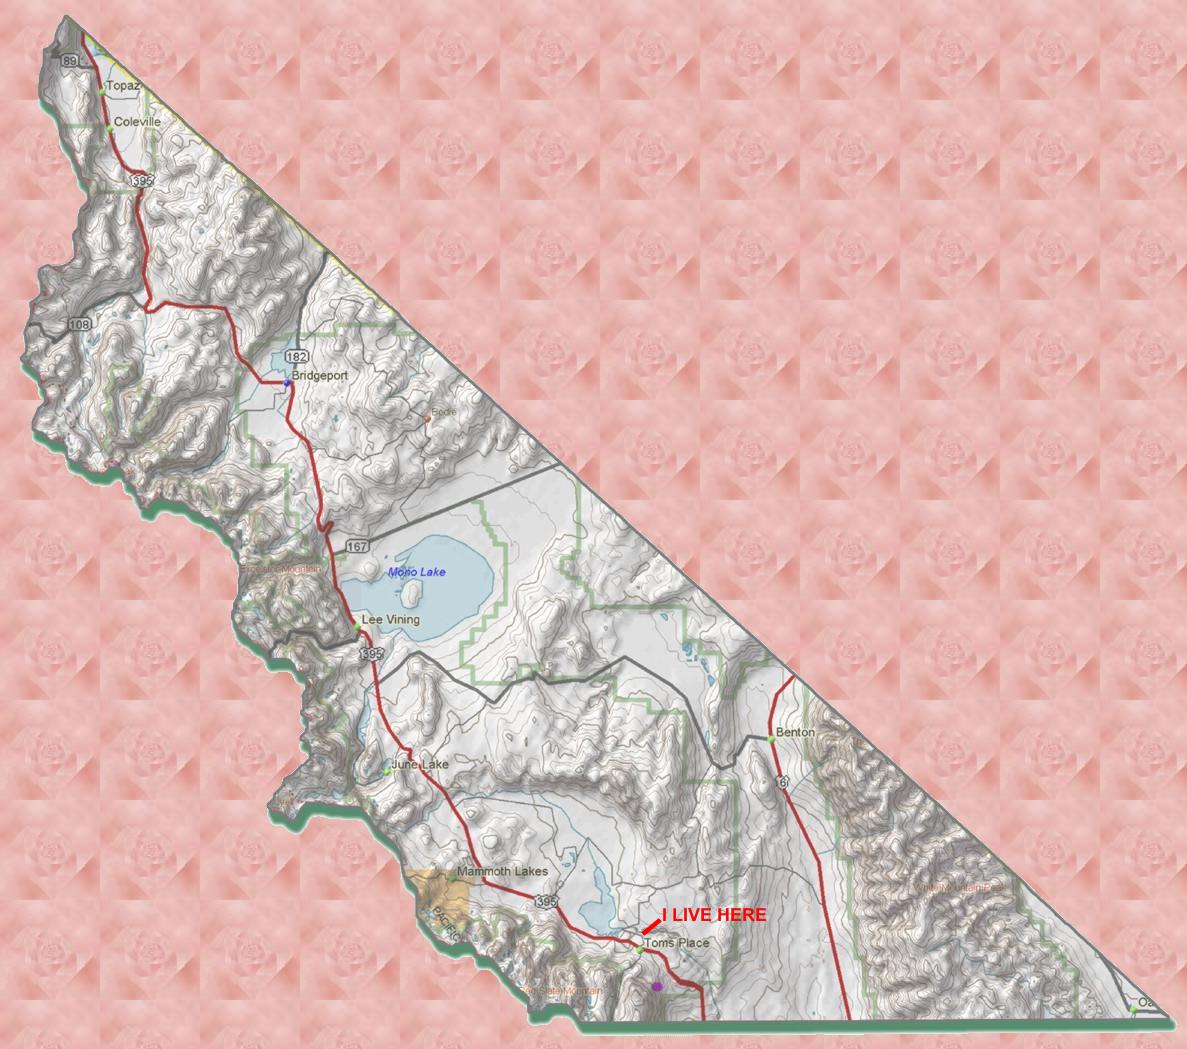 Mono County Map